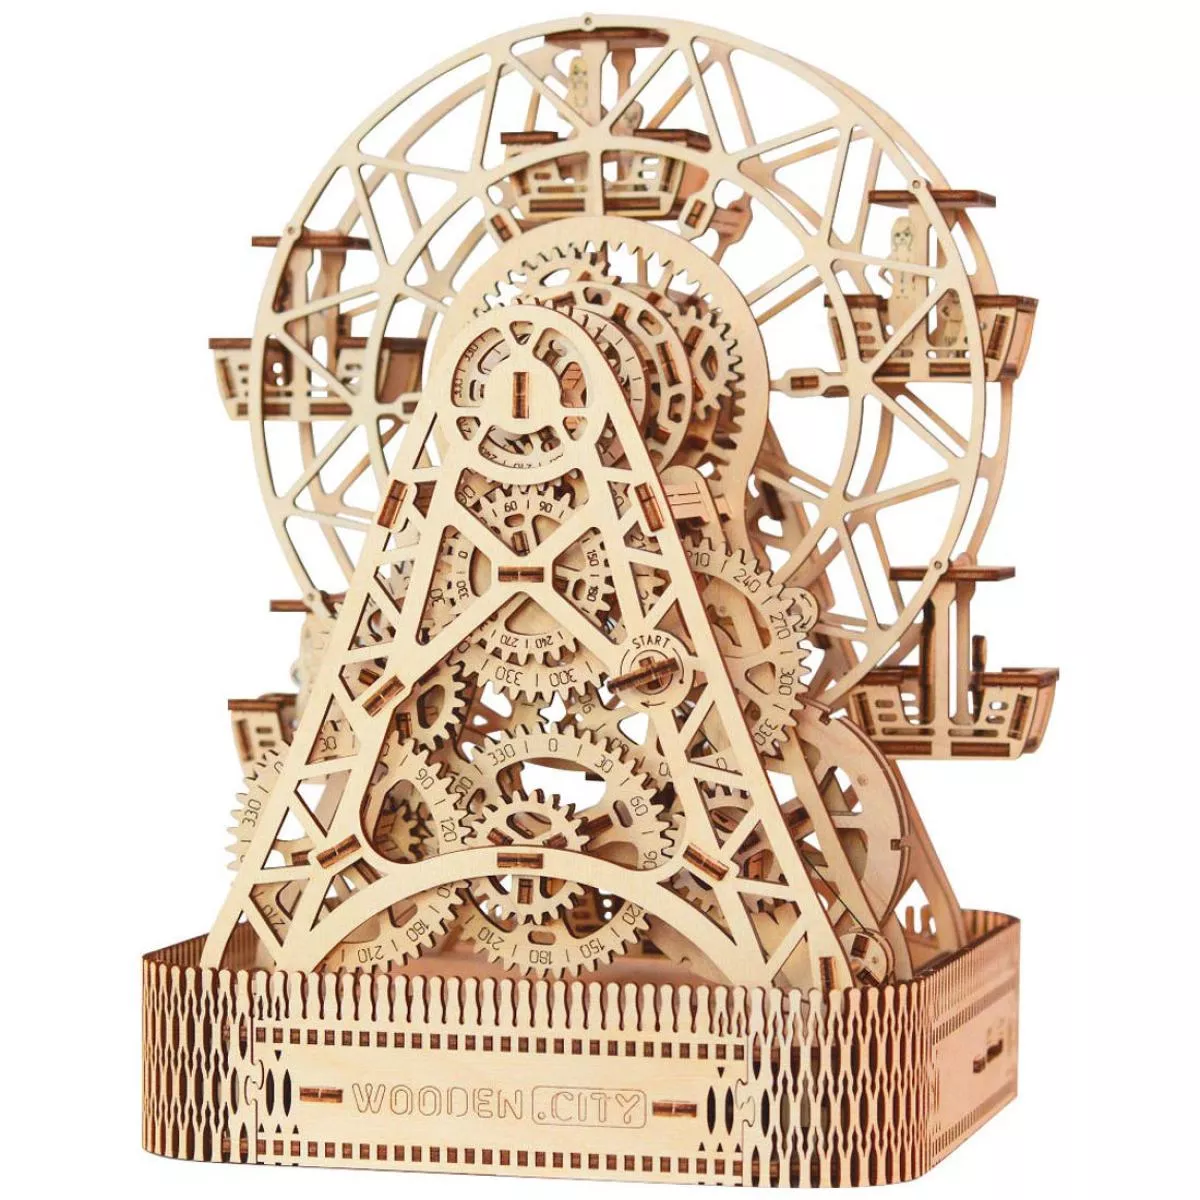 Riesenrad – Großer Modellbausatz aus Holz mit Aufzugsmotor